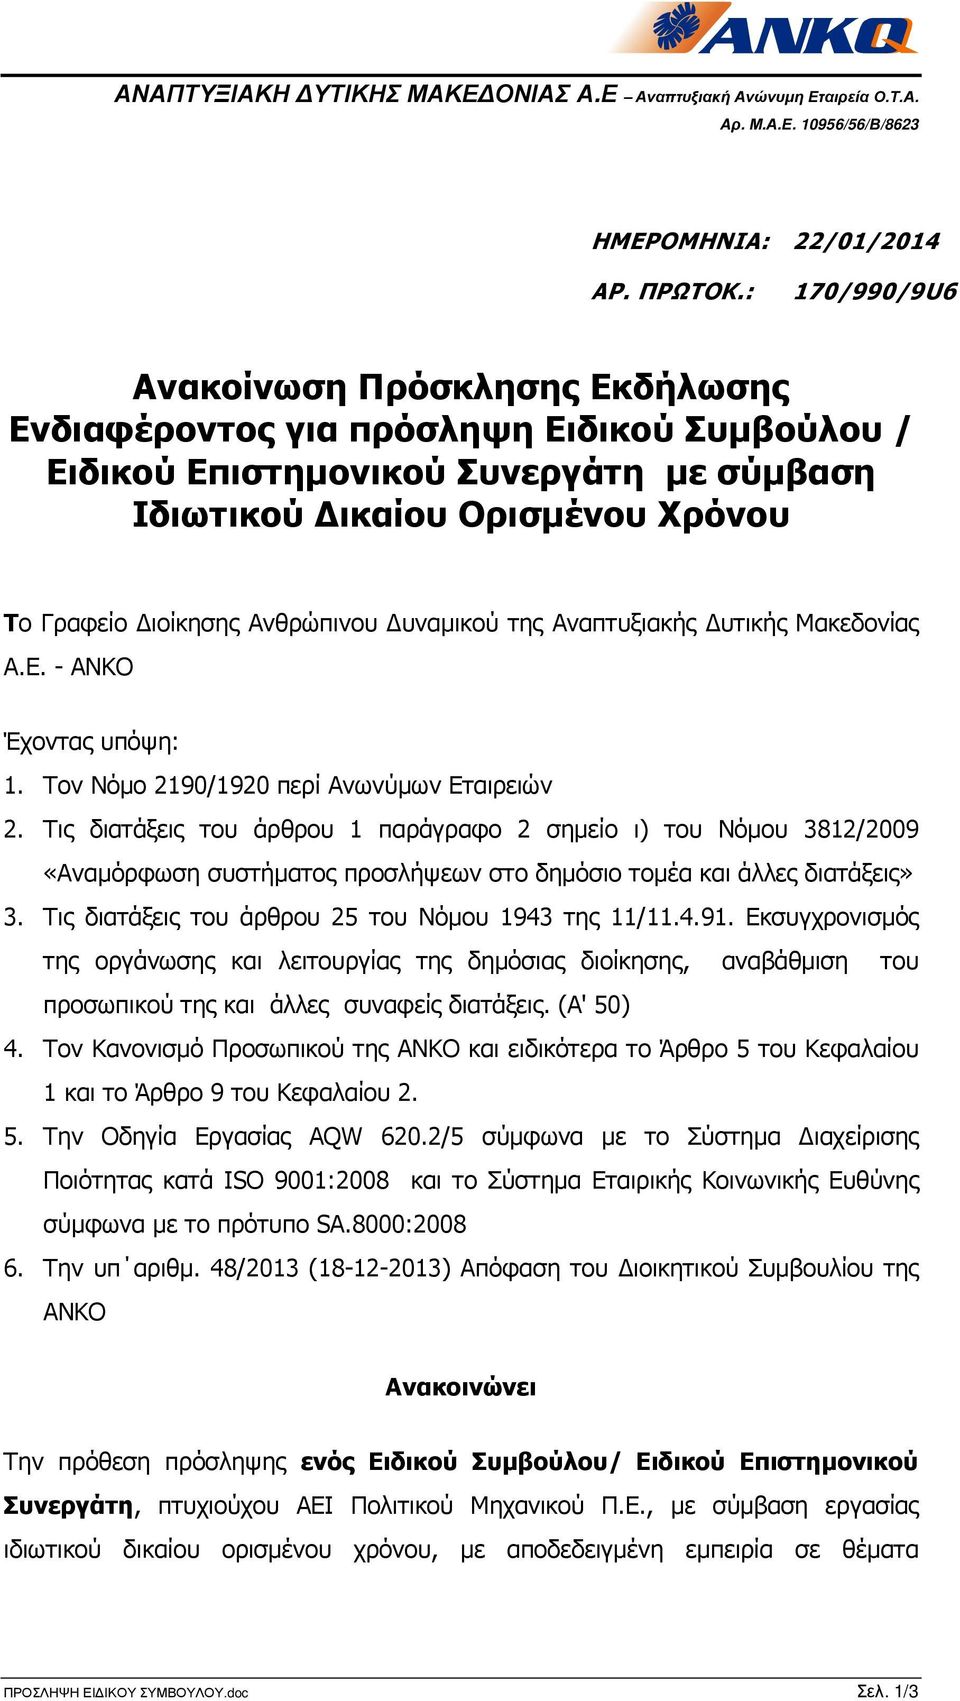 Ανθρώπινου υναµικού της Αναπτυξιακής υτικής Μακεδονίας Α.Ε.